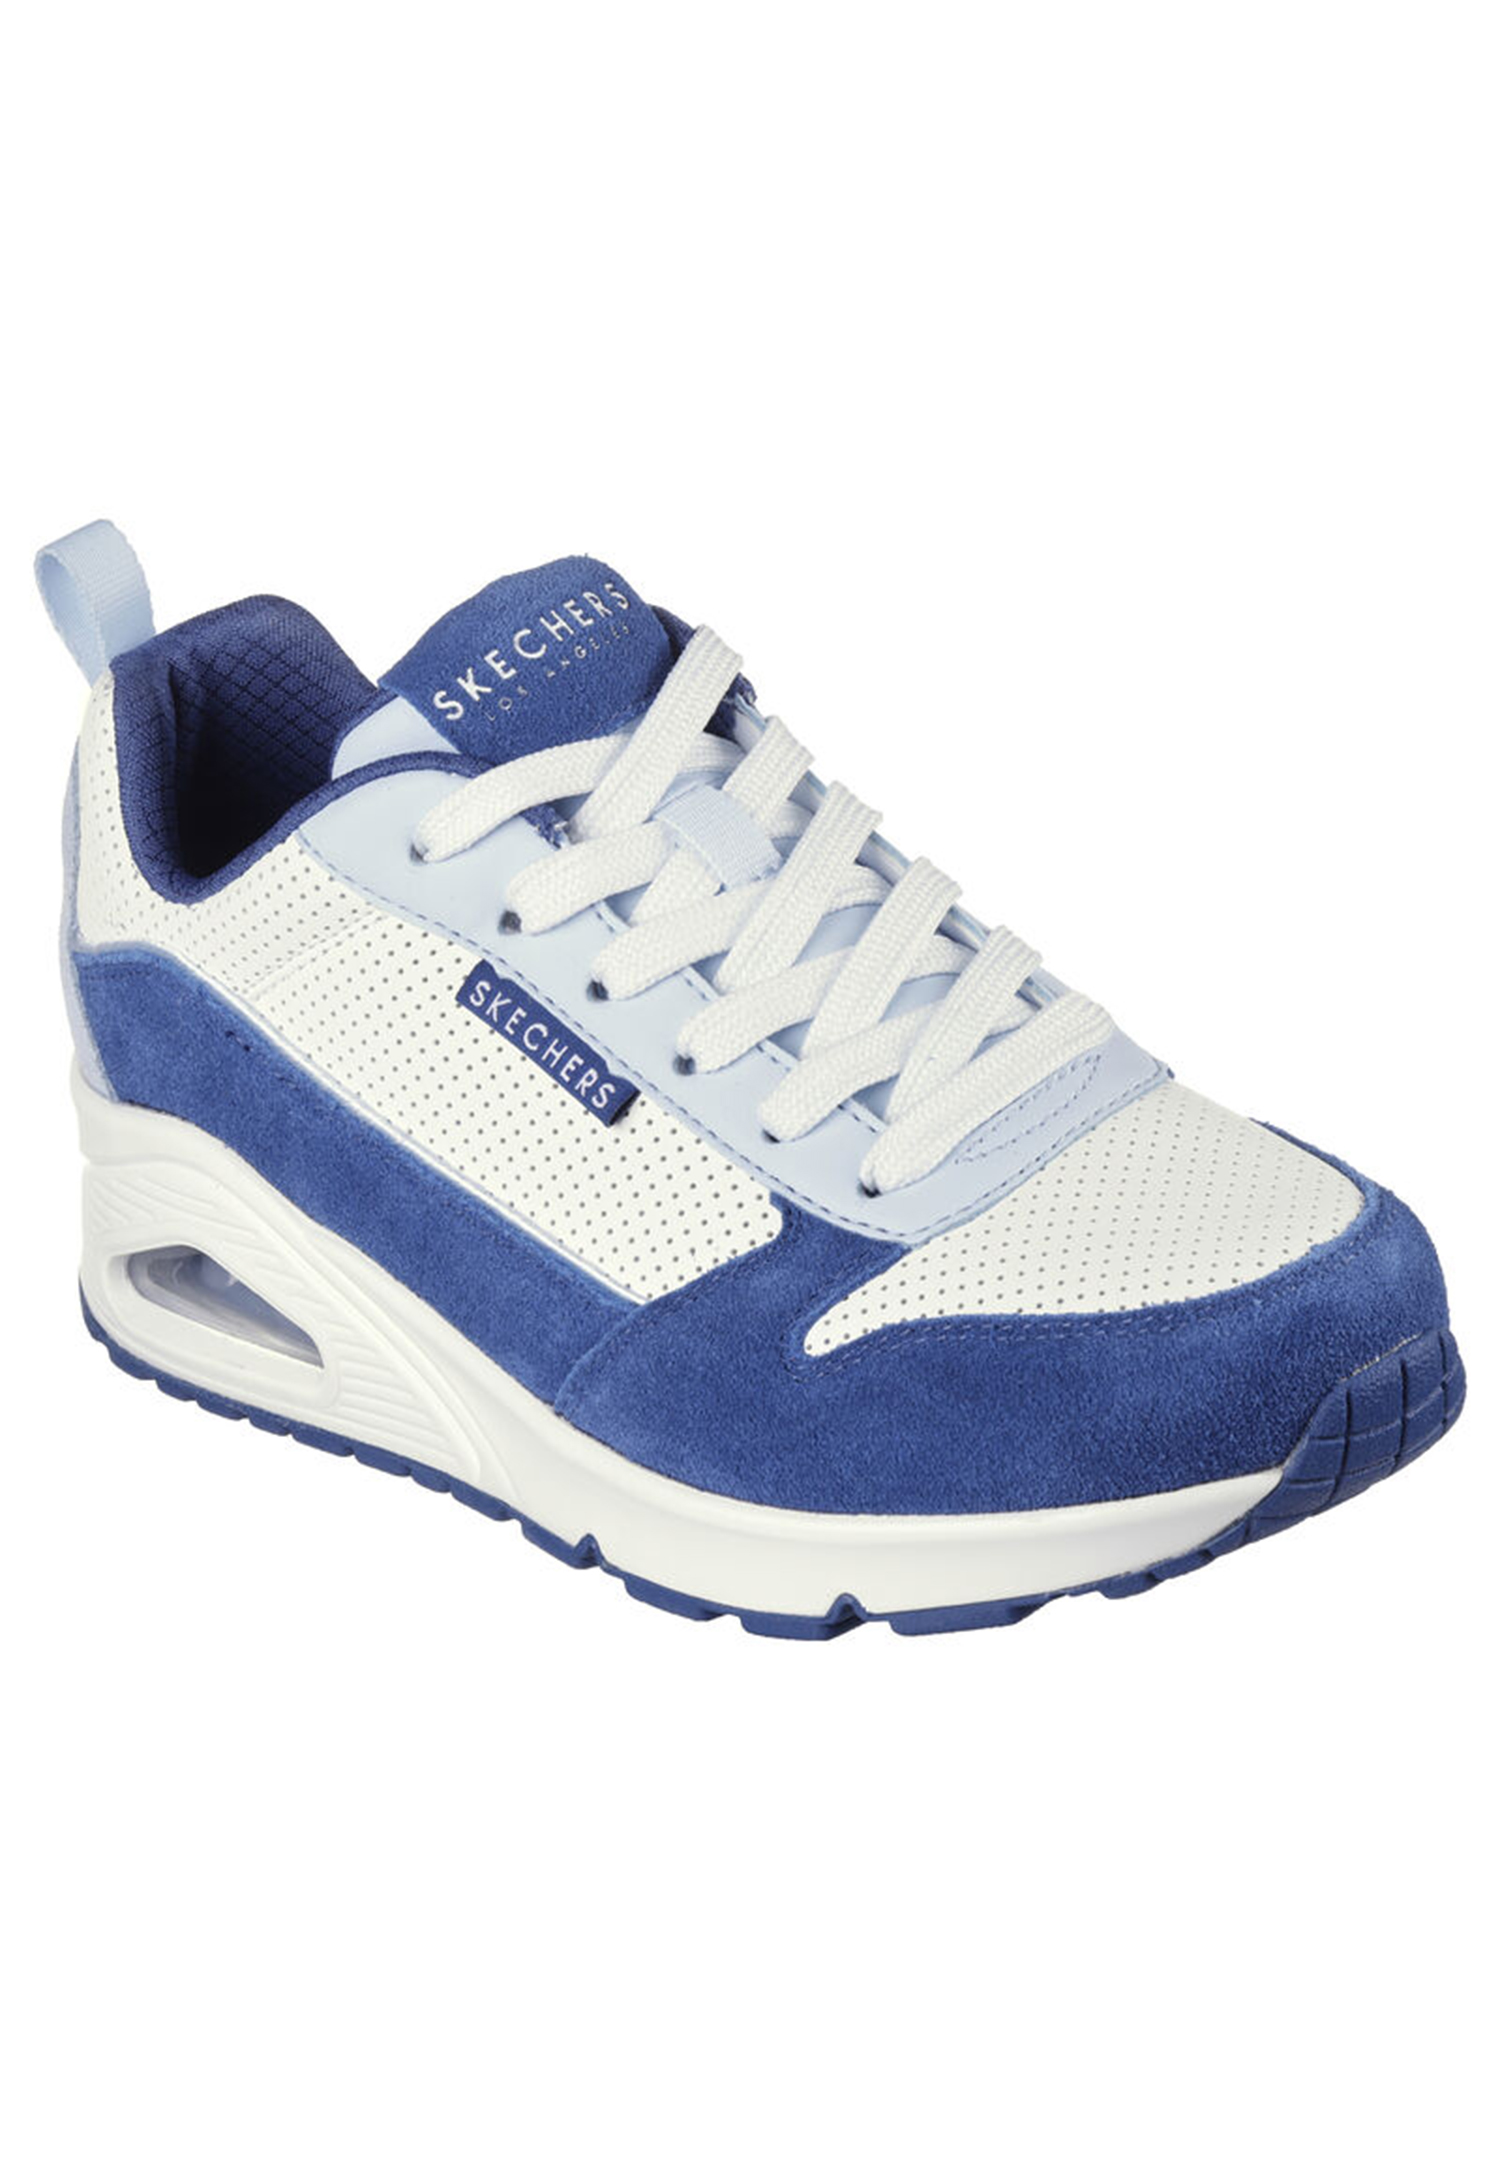 Skecher Street Uno-2 MUCH FUN Damen Sneaker 177105 WBL weiss/blau